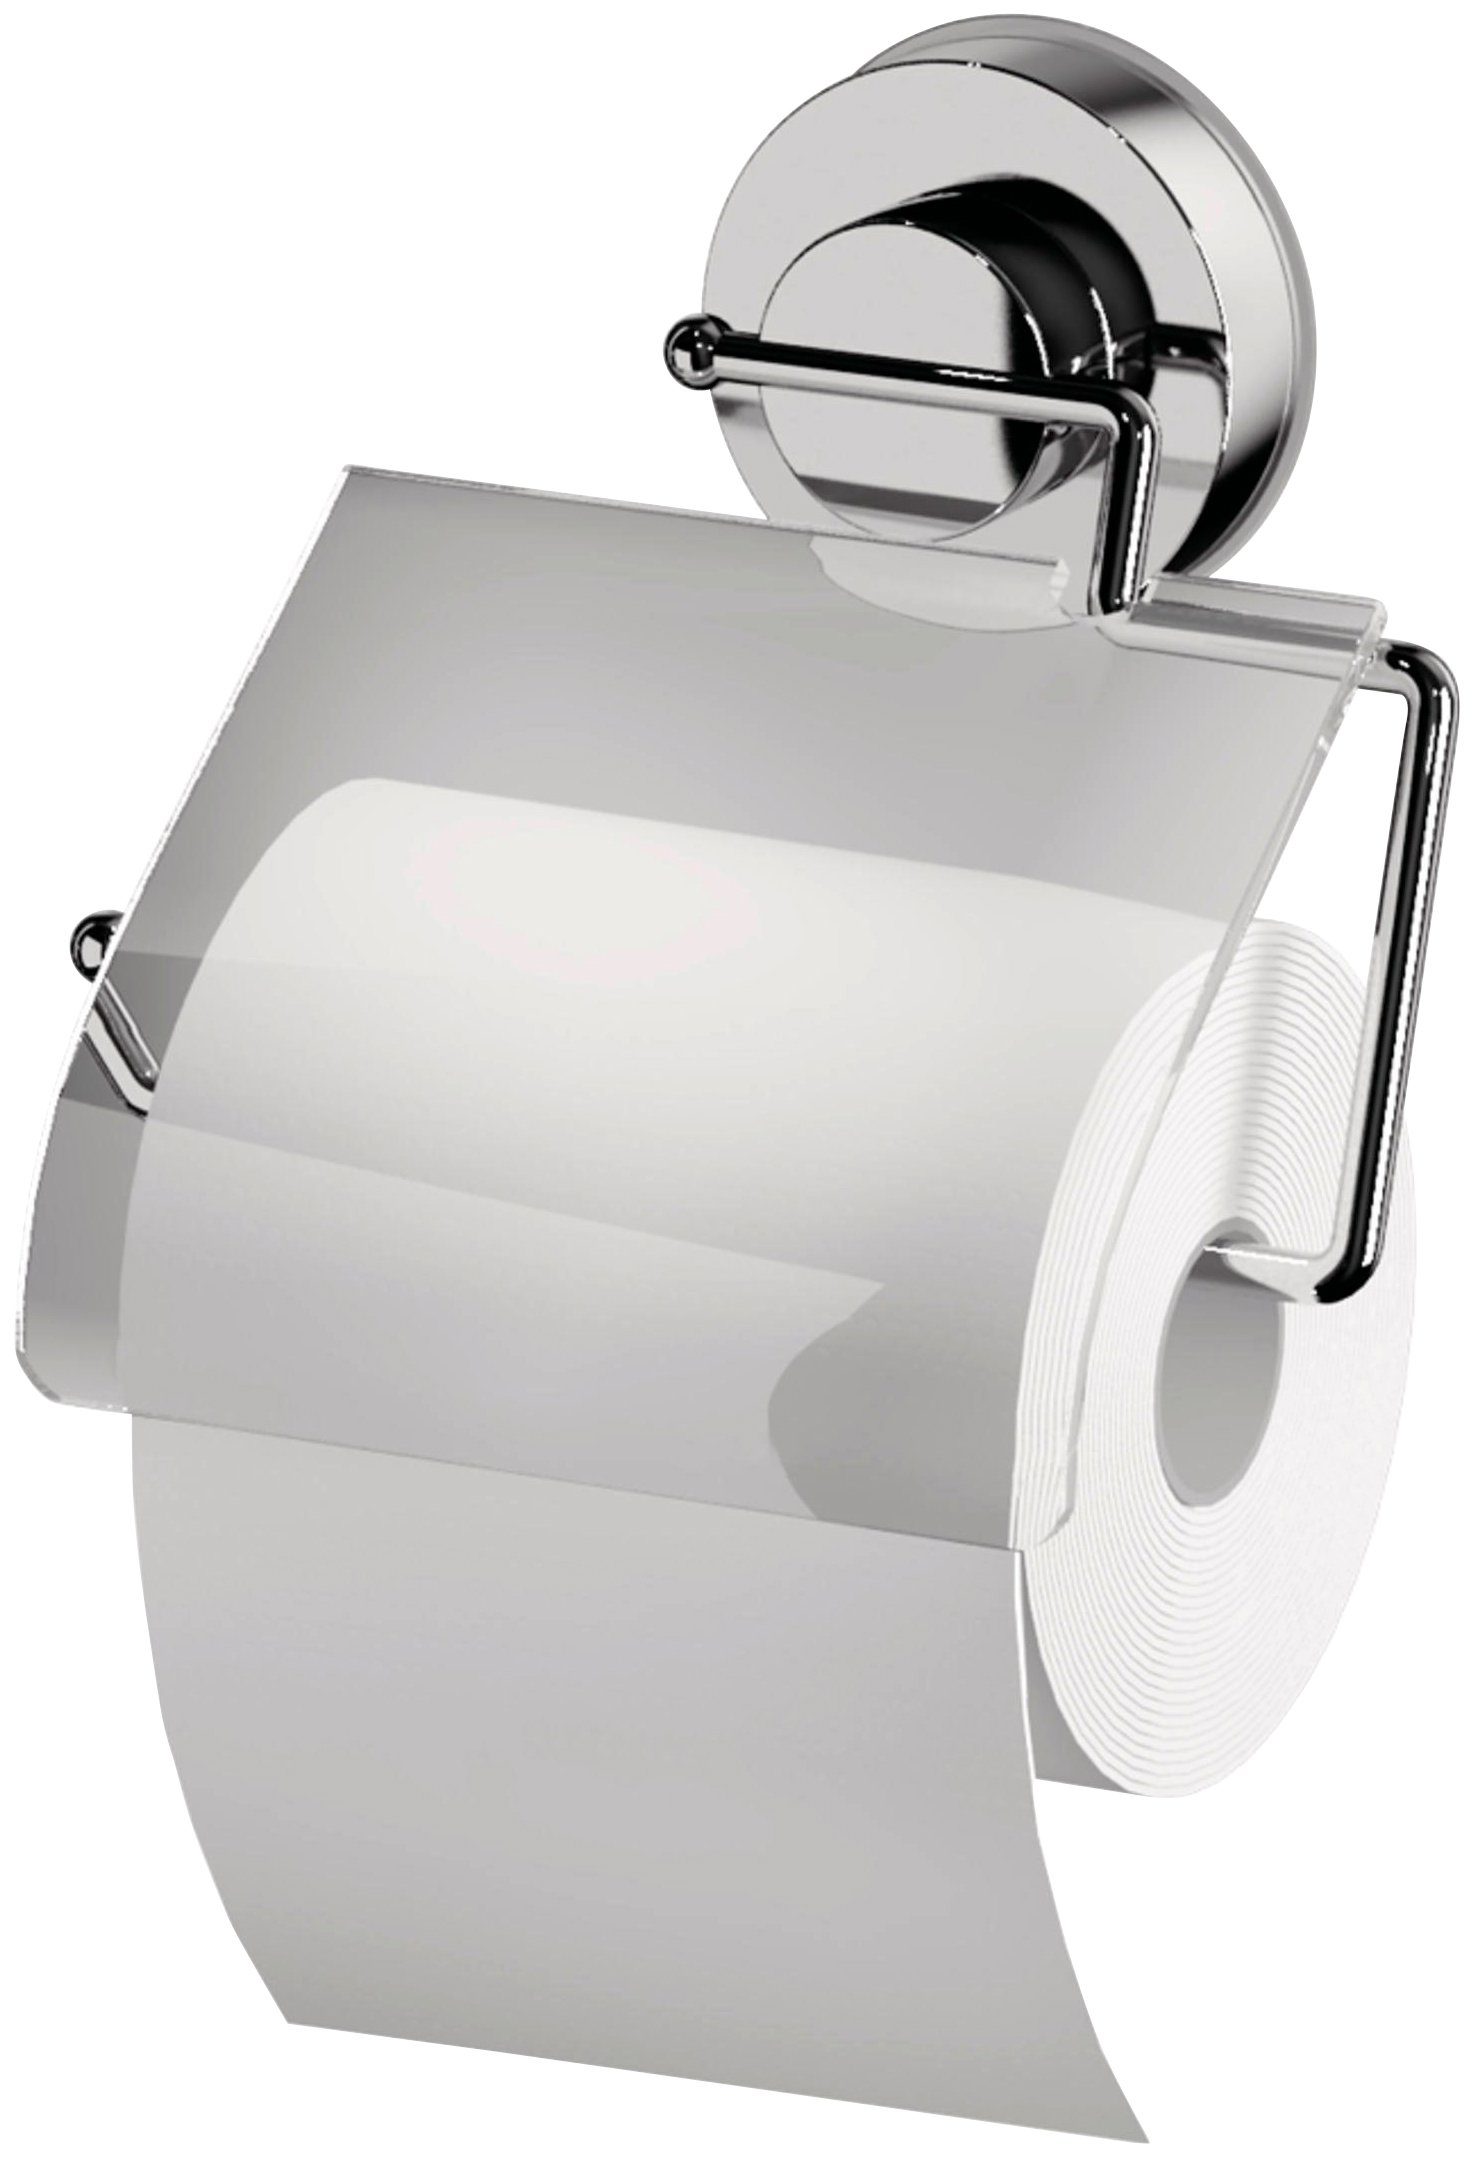 Ridder Toilettenpapierhalter, mit Saugvorrichtung